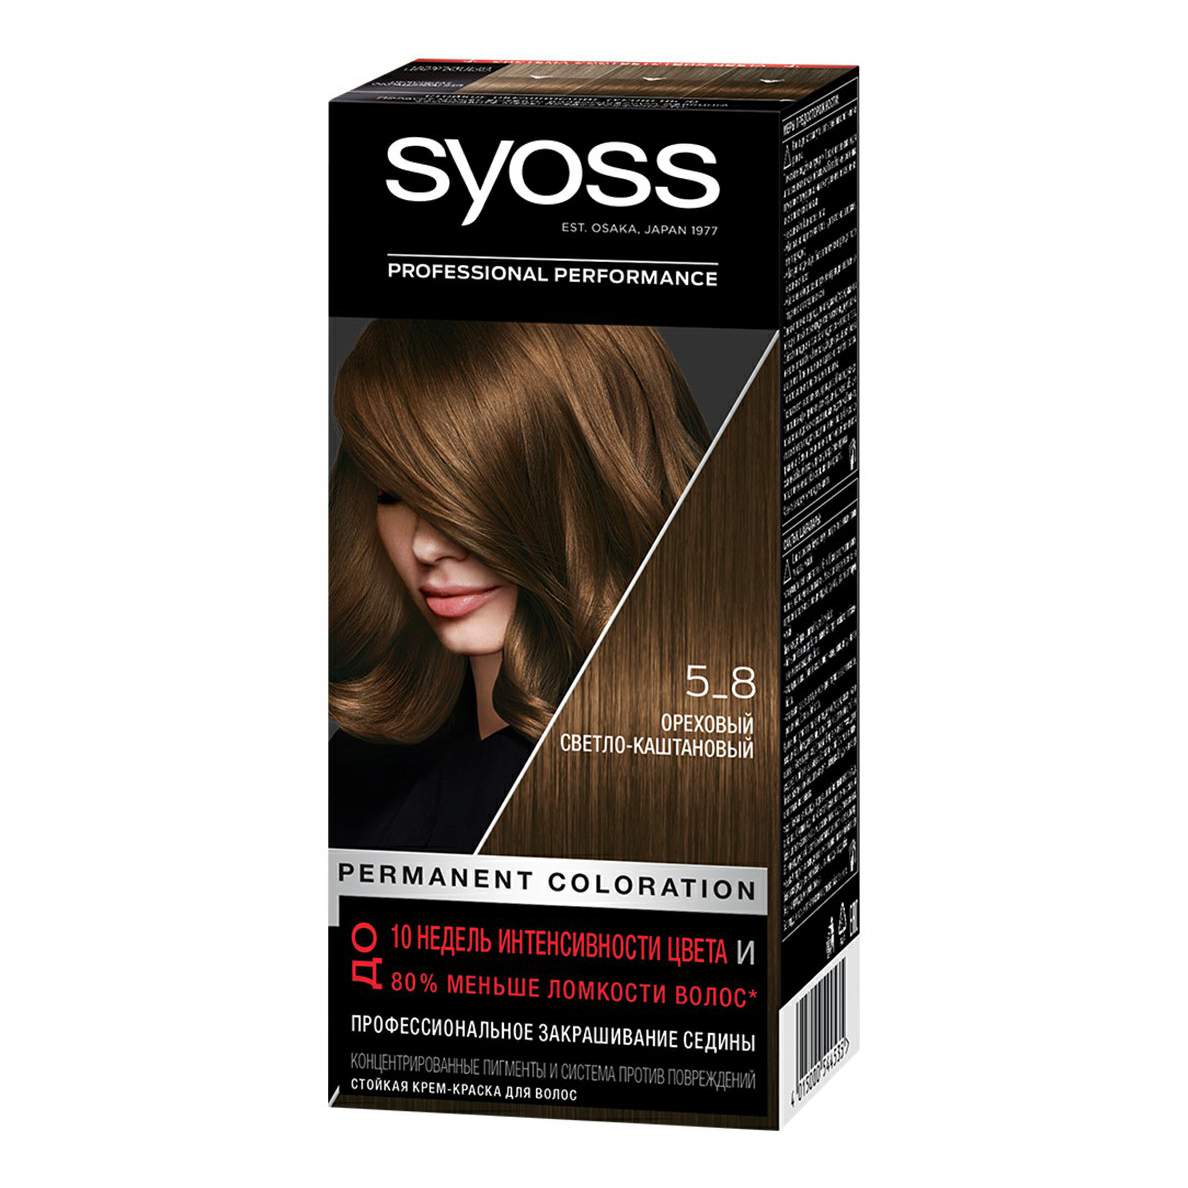 Купить краска для волос Syoss Permanent Coloration тон 5-8 ореховыйсветло-каштановый 115 мл, цены в Москве на Мегамаркет